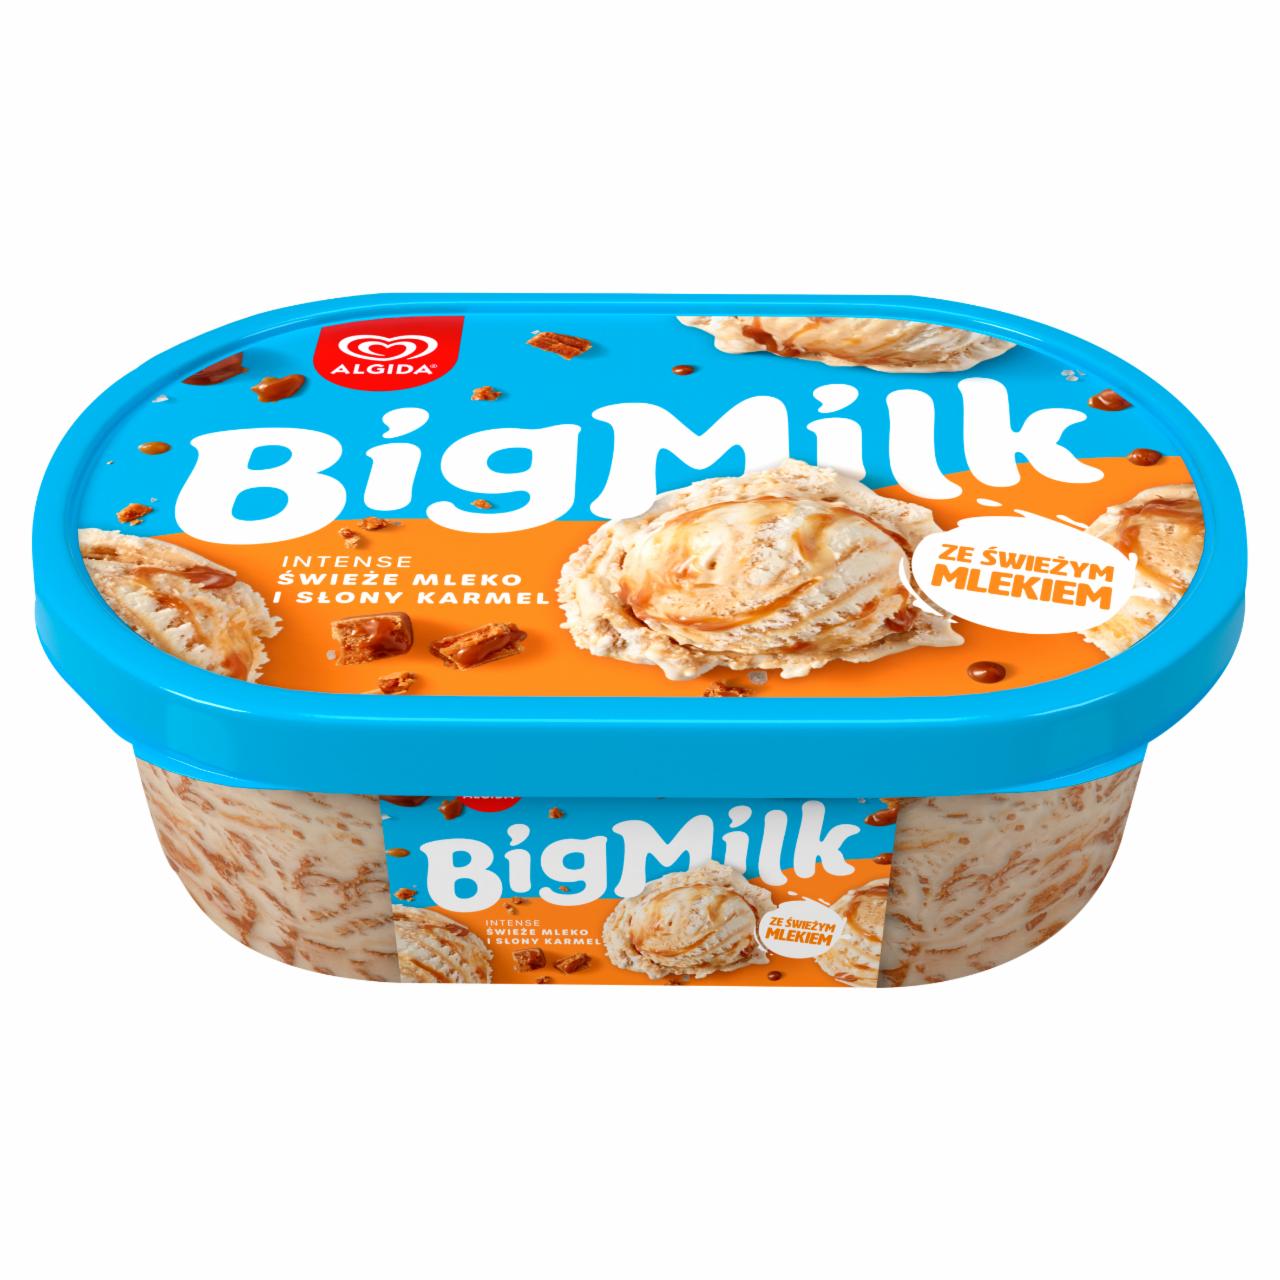 Zdjęcia - Big Milk Intense Lody świeże mleko i słony karmel 1000 ml